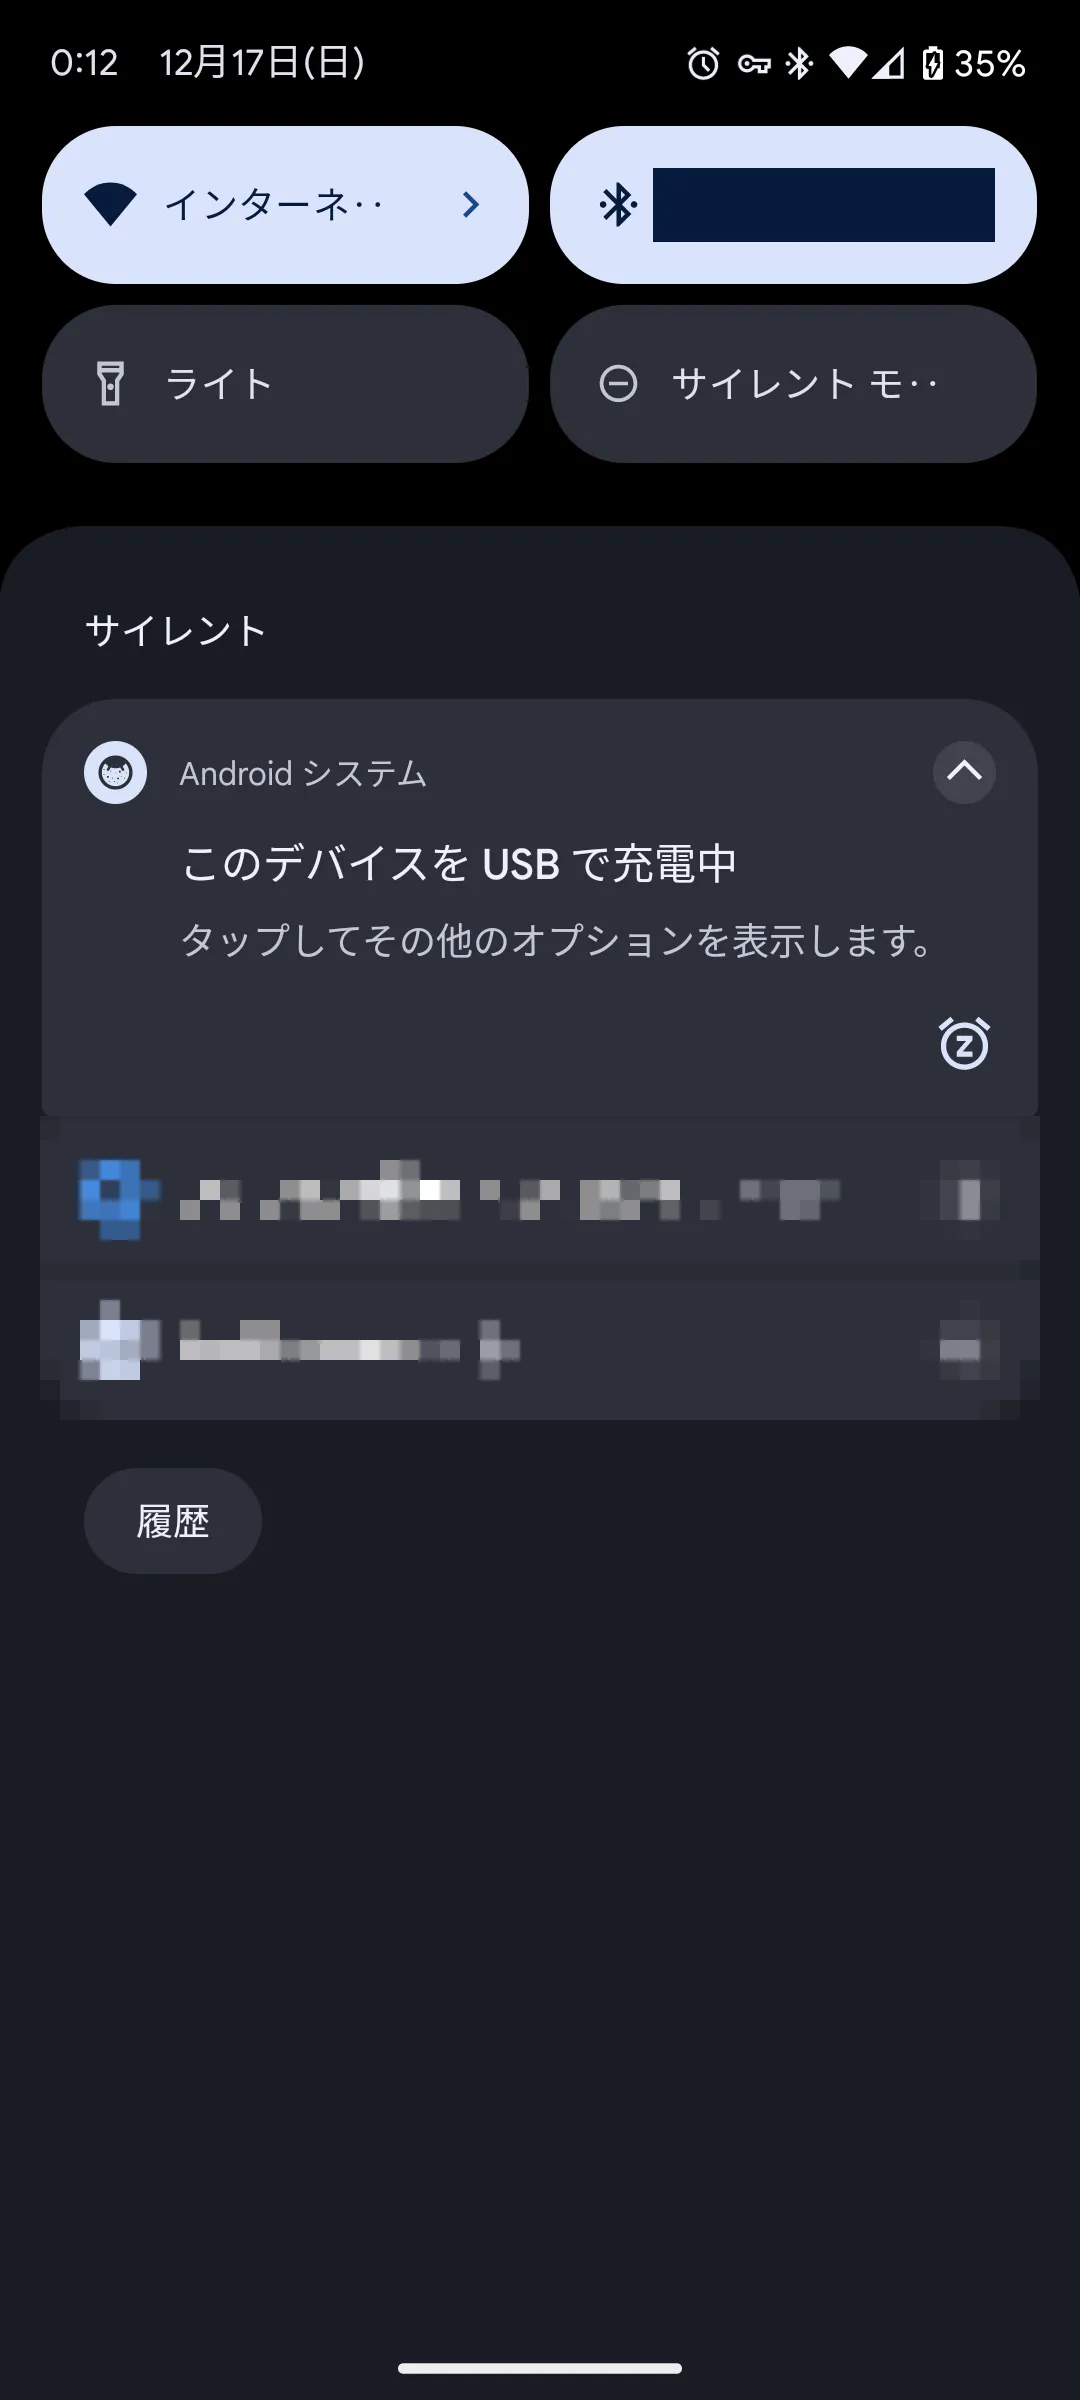 Androidスマホの通知画面のスクリーンショット。Androidシステムからの［このデバイスをUSBで充電中］という通知が表示されている